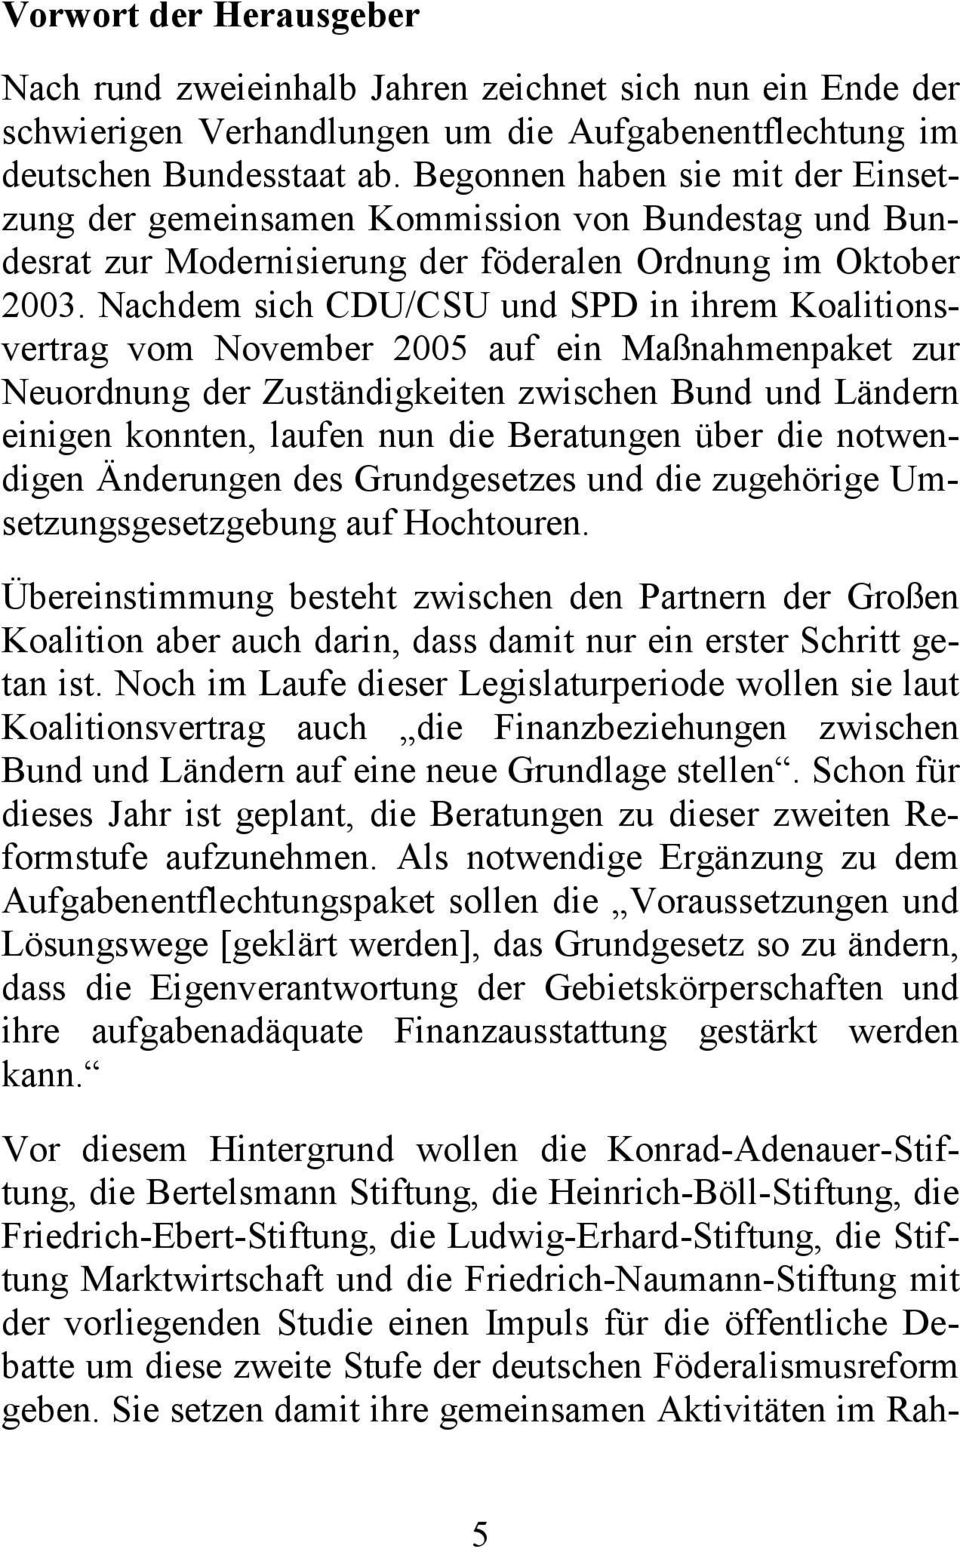 Nachdem sich CDU/CSU und SPD in ihrem Koalitionsvertrag vom November 2005 auf ein Maßnahmenpaket zur Neuordnung der Zuständigkeiten zwischen Bund und Ländern einigen konnten, laufen nun die